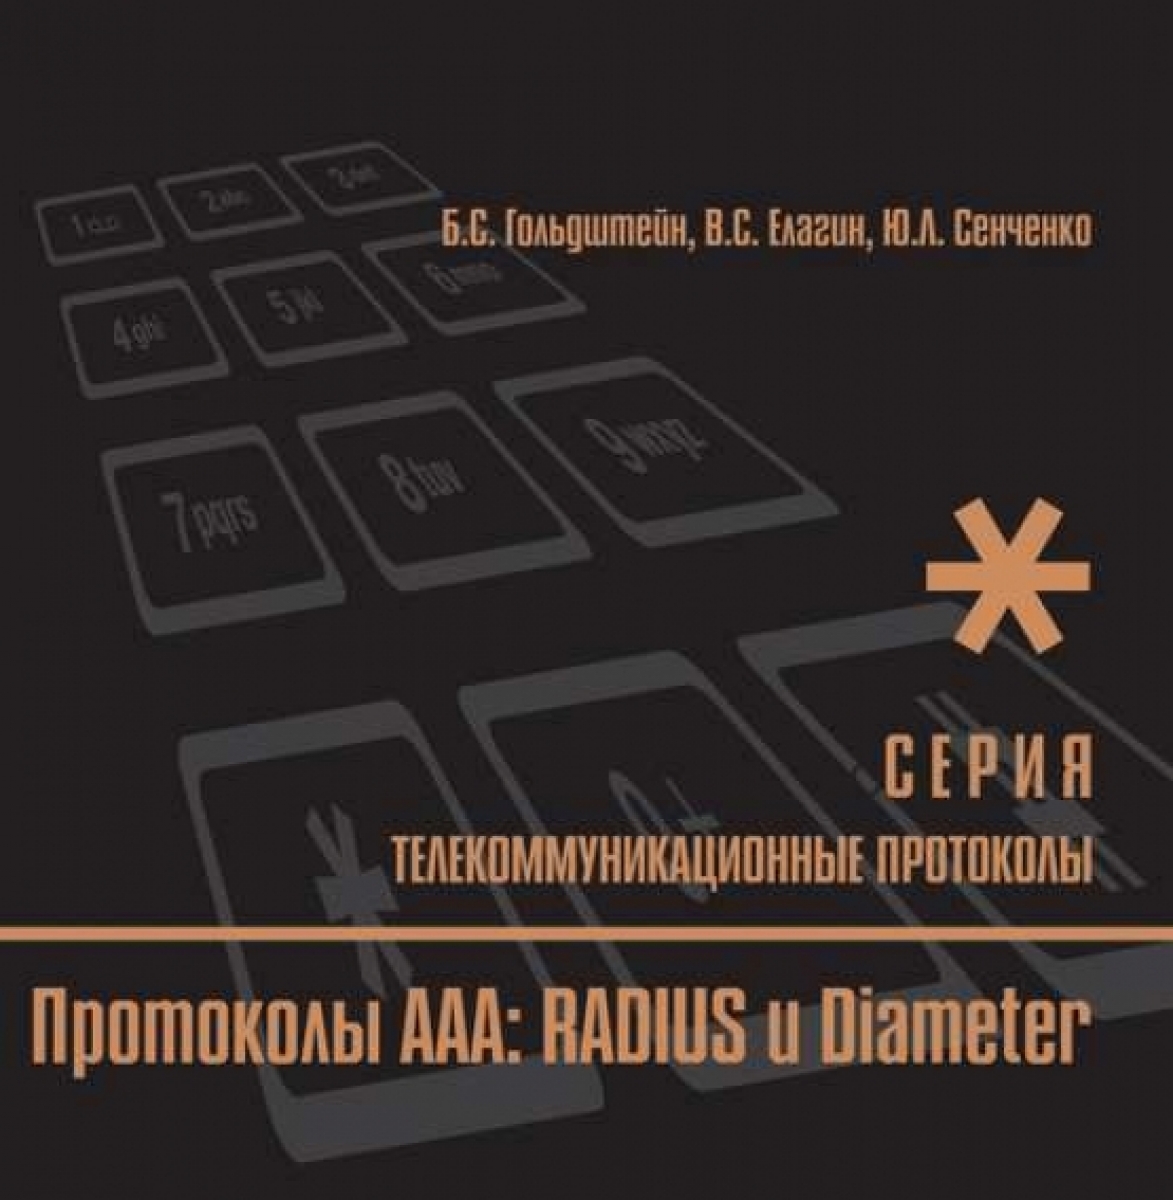  ..  : RADIUS  Diameter.  9 